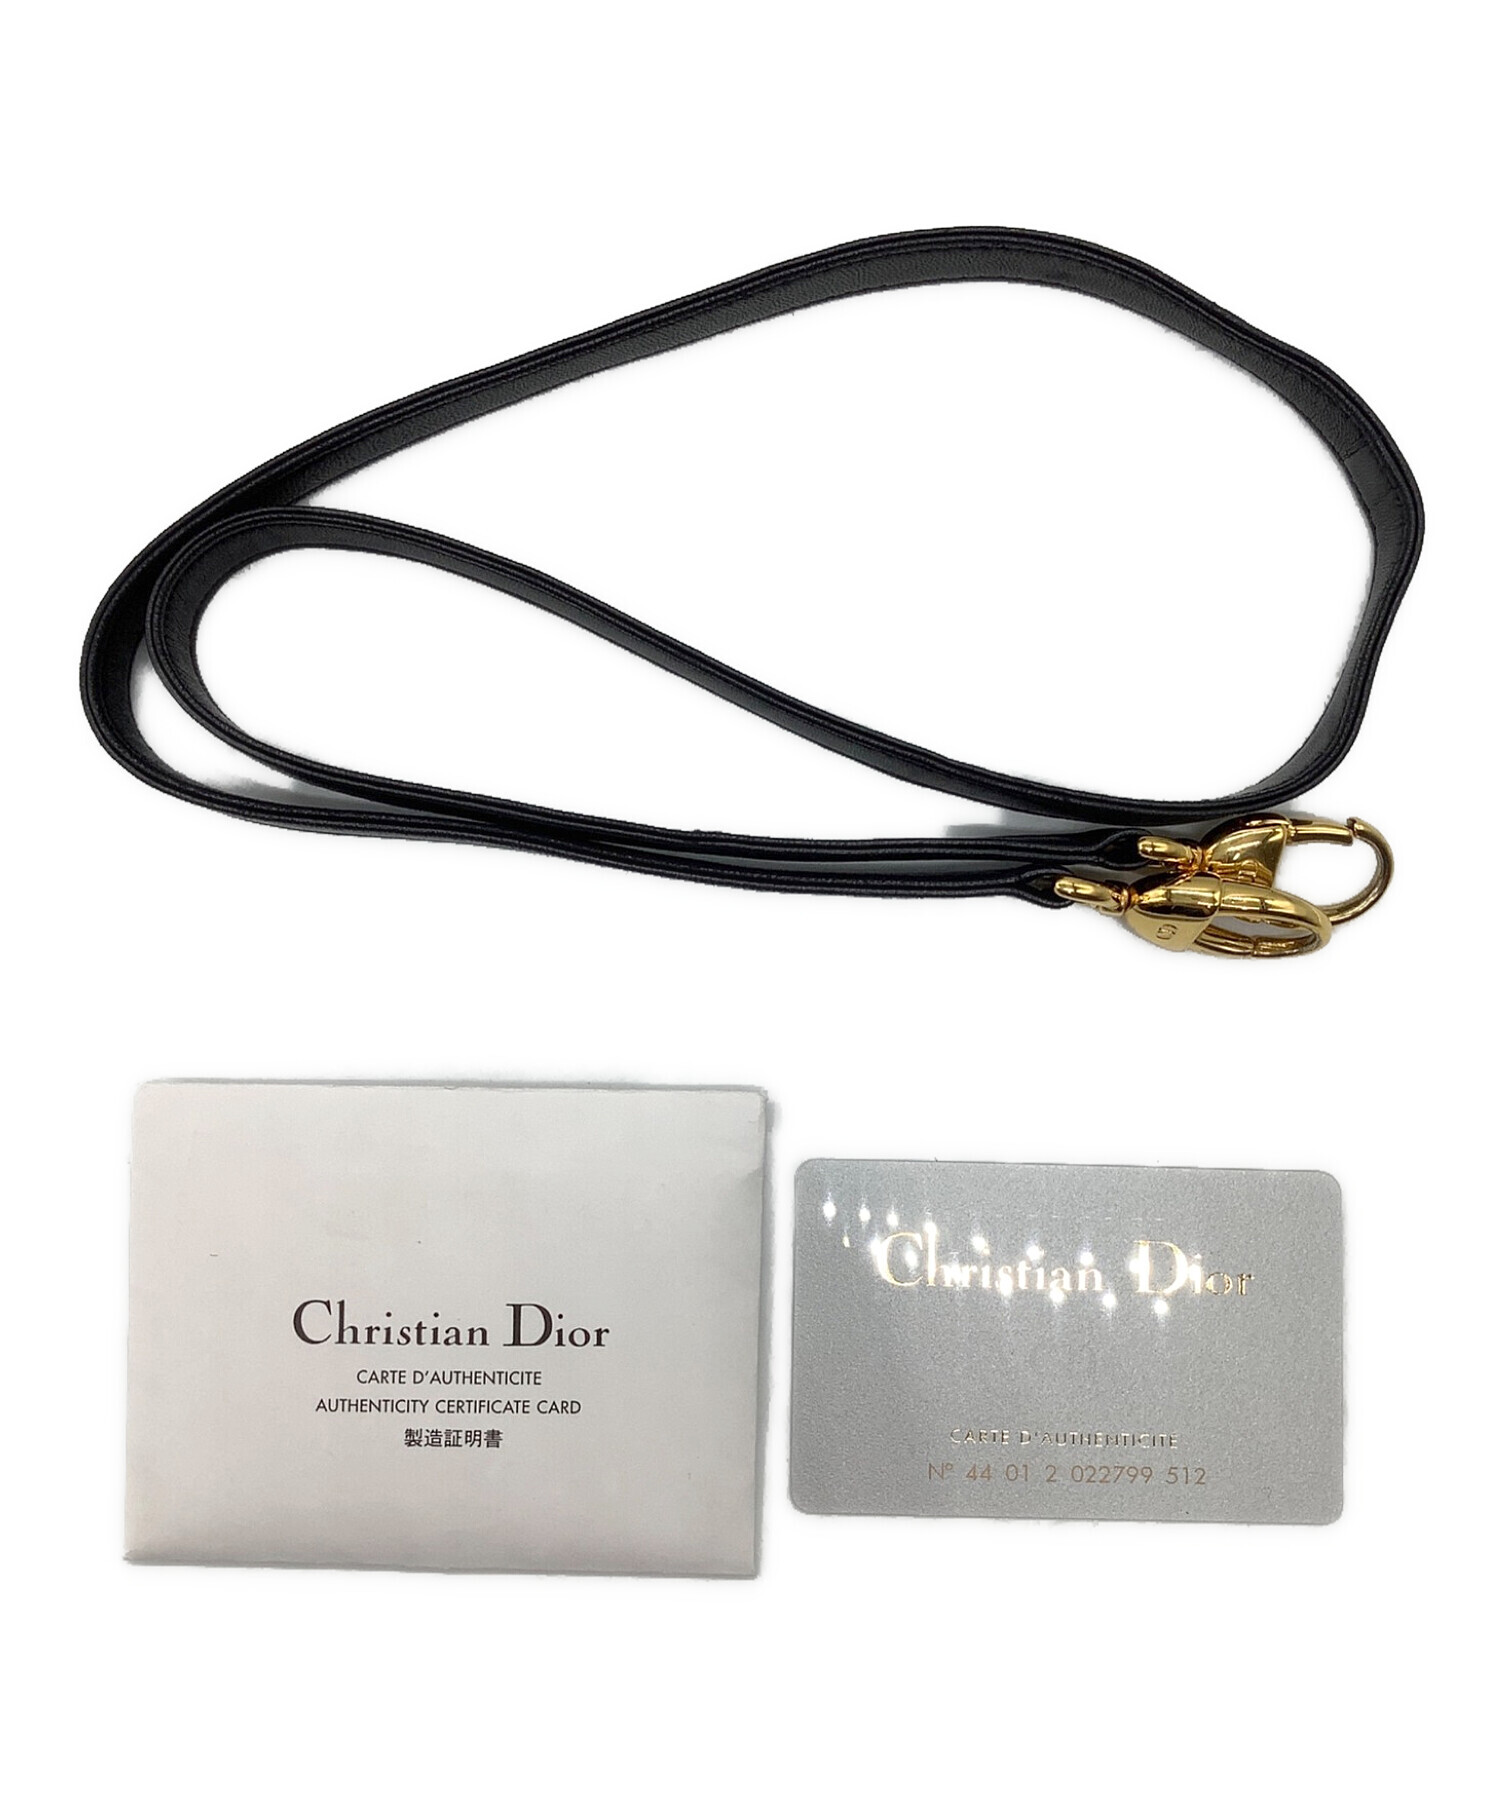 Christian Dior (クリスチャン ディオール) レディディオール ハンドバッグ ブラック